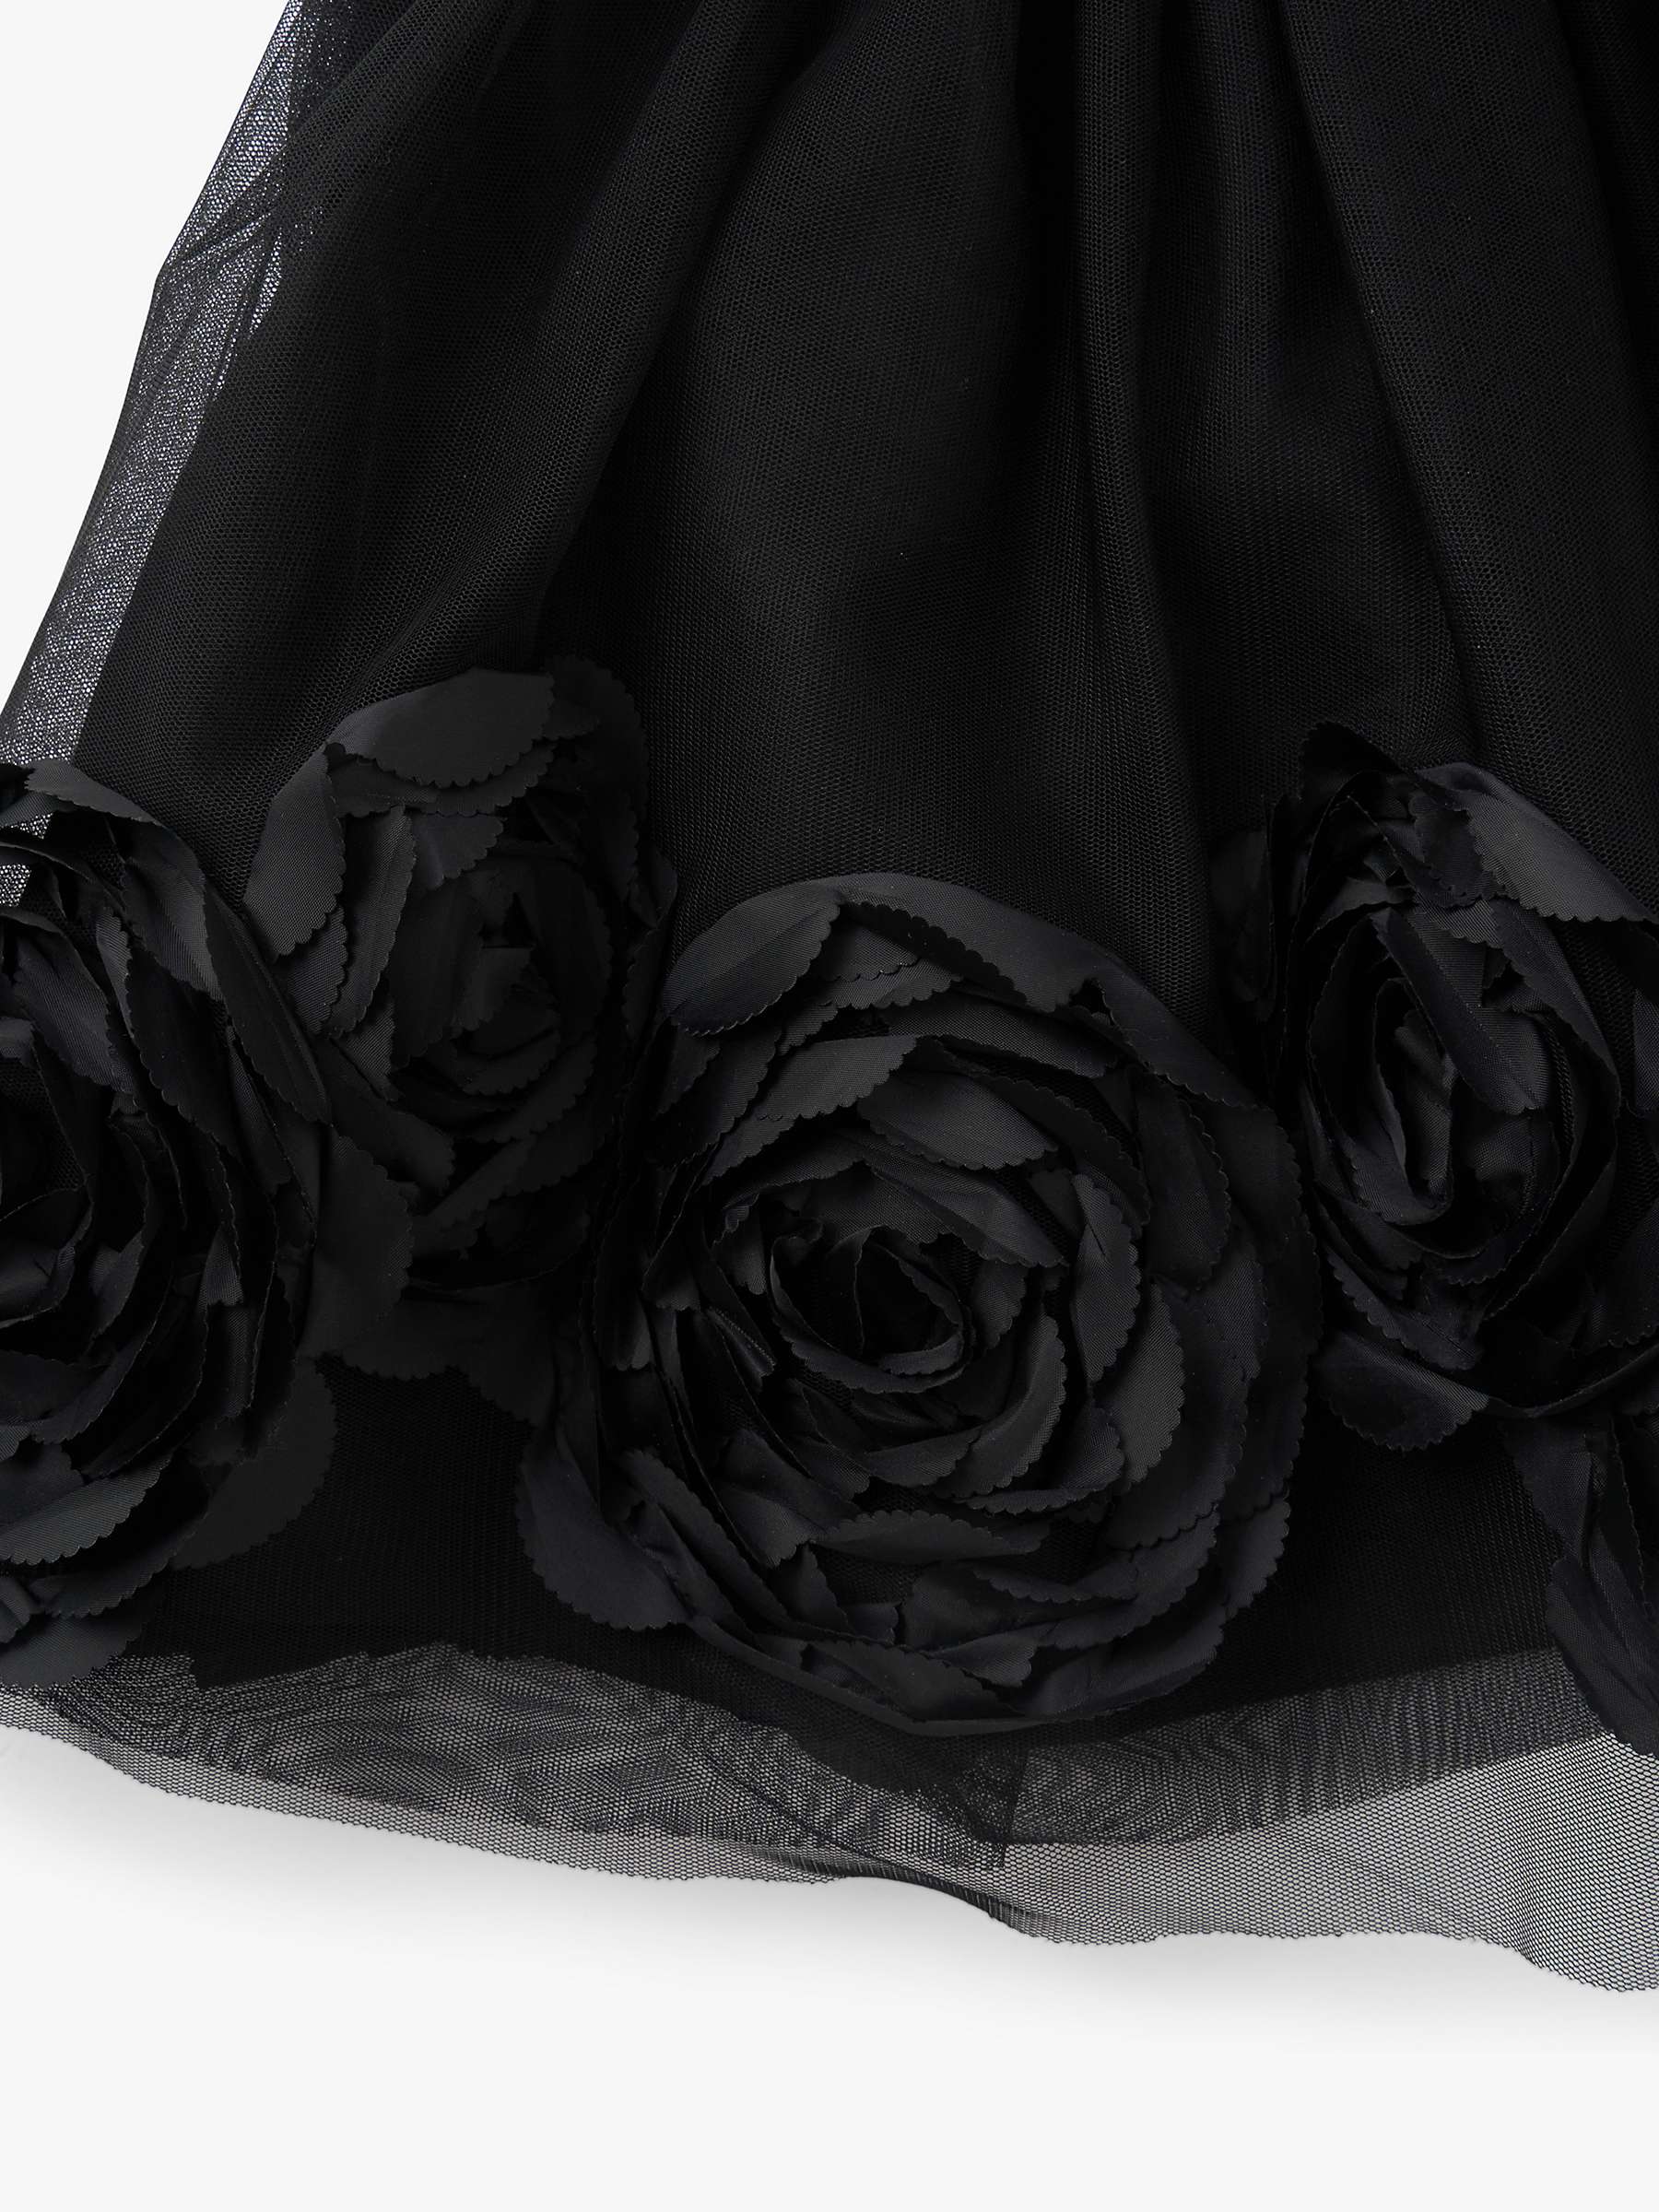 Buy Angel & Rocket Kids' Collette Rose Bud Mesh Skirt, Black Online at johnlewis.com